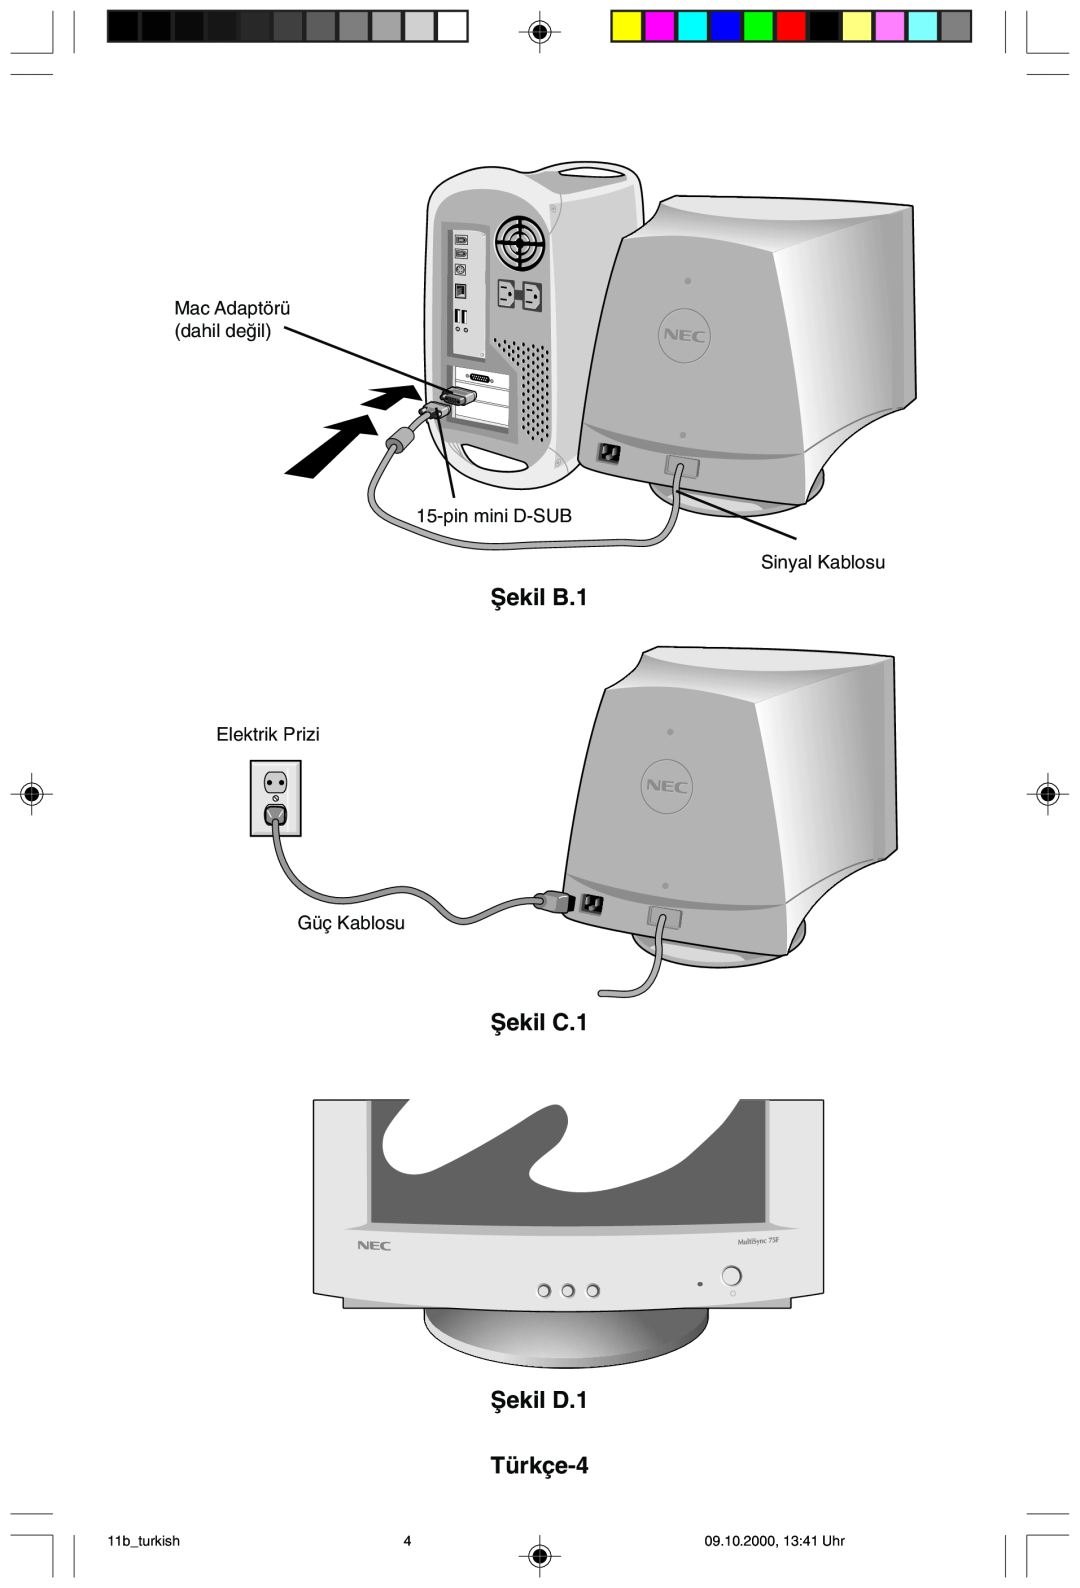 NEC 95F Ωekil B.1, Ωekil C.1 Ωekil D.1 Türkçe-4, Mac Adaptörü dahil deπil 15-pin mini D-SUB Sinyal Kablosu, 11bturkish 